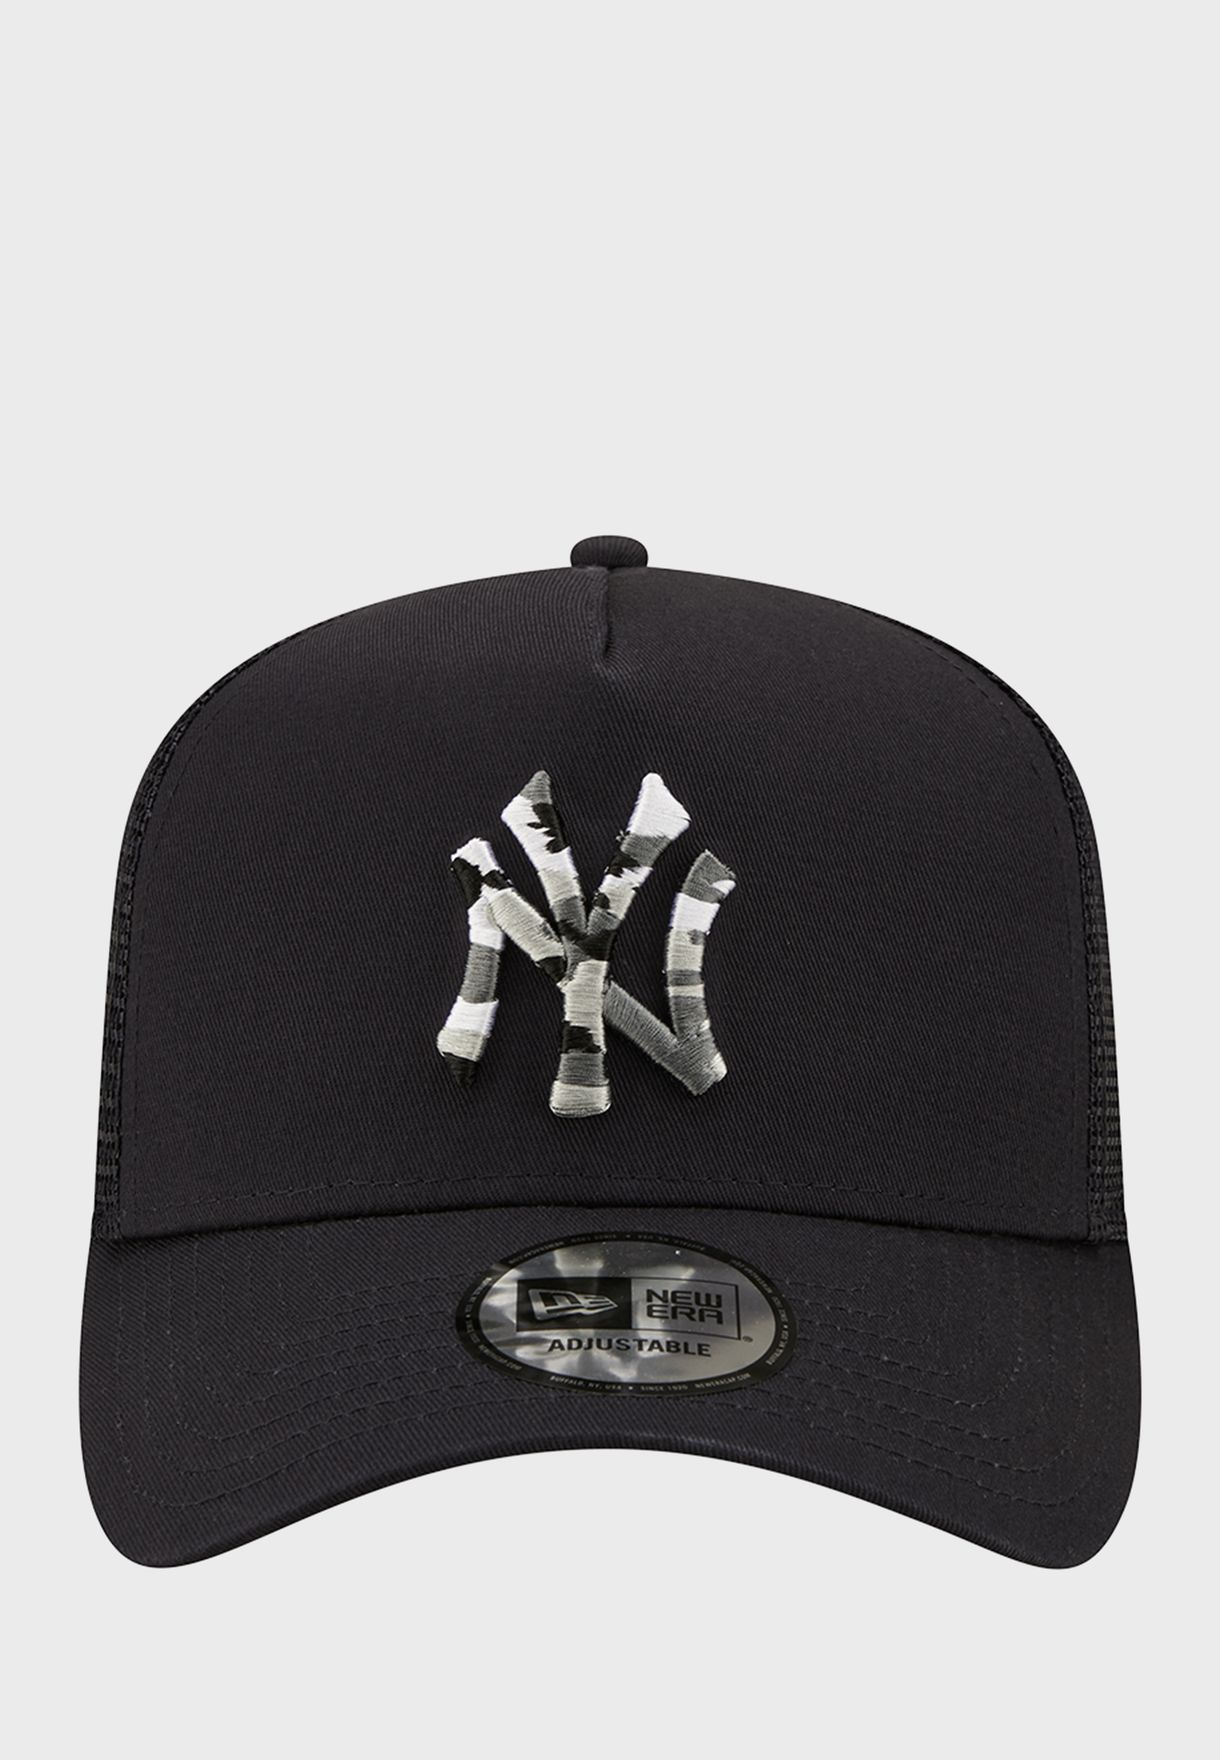 New York Yankees Trucker